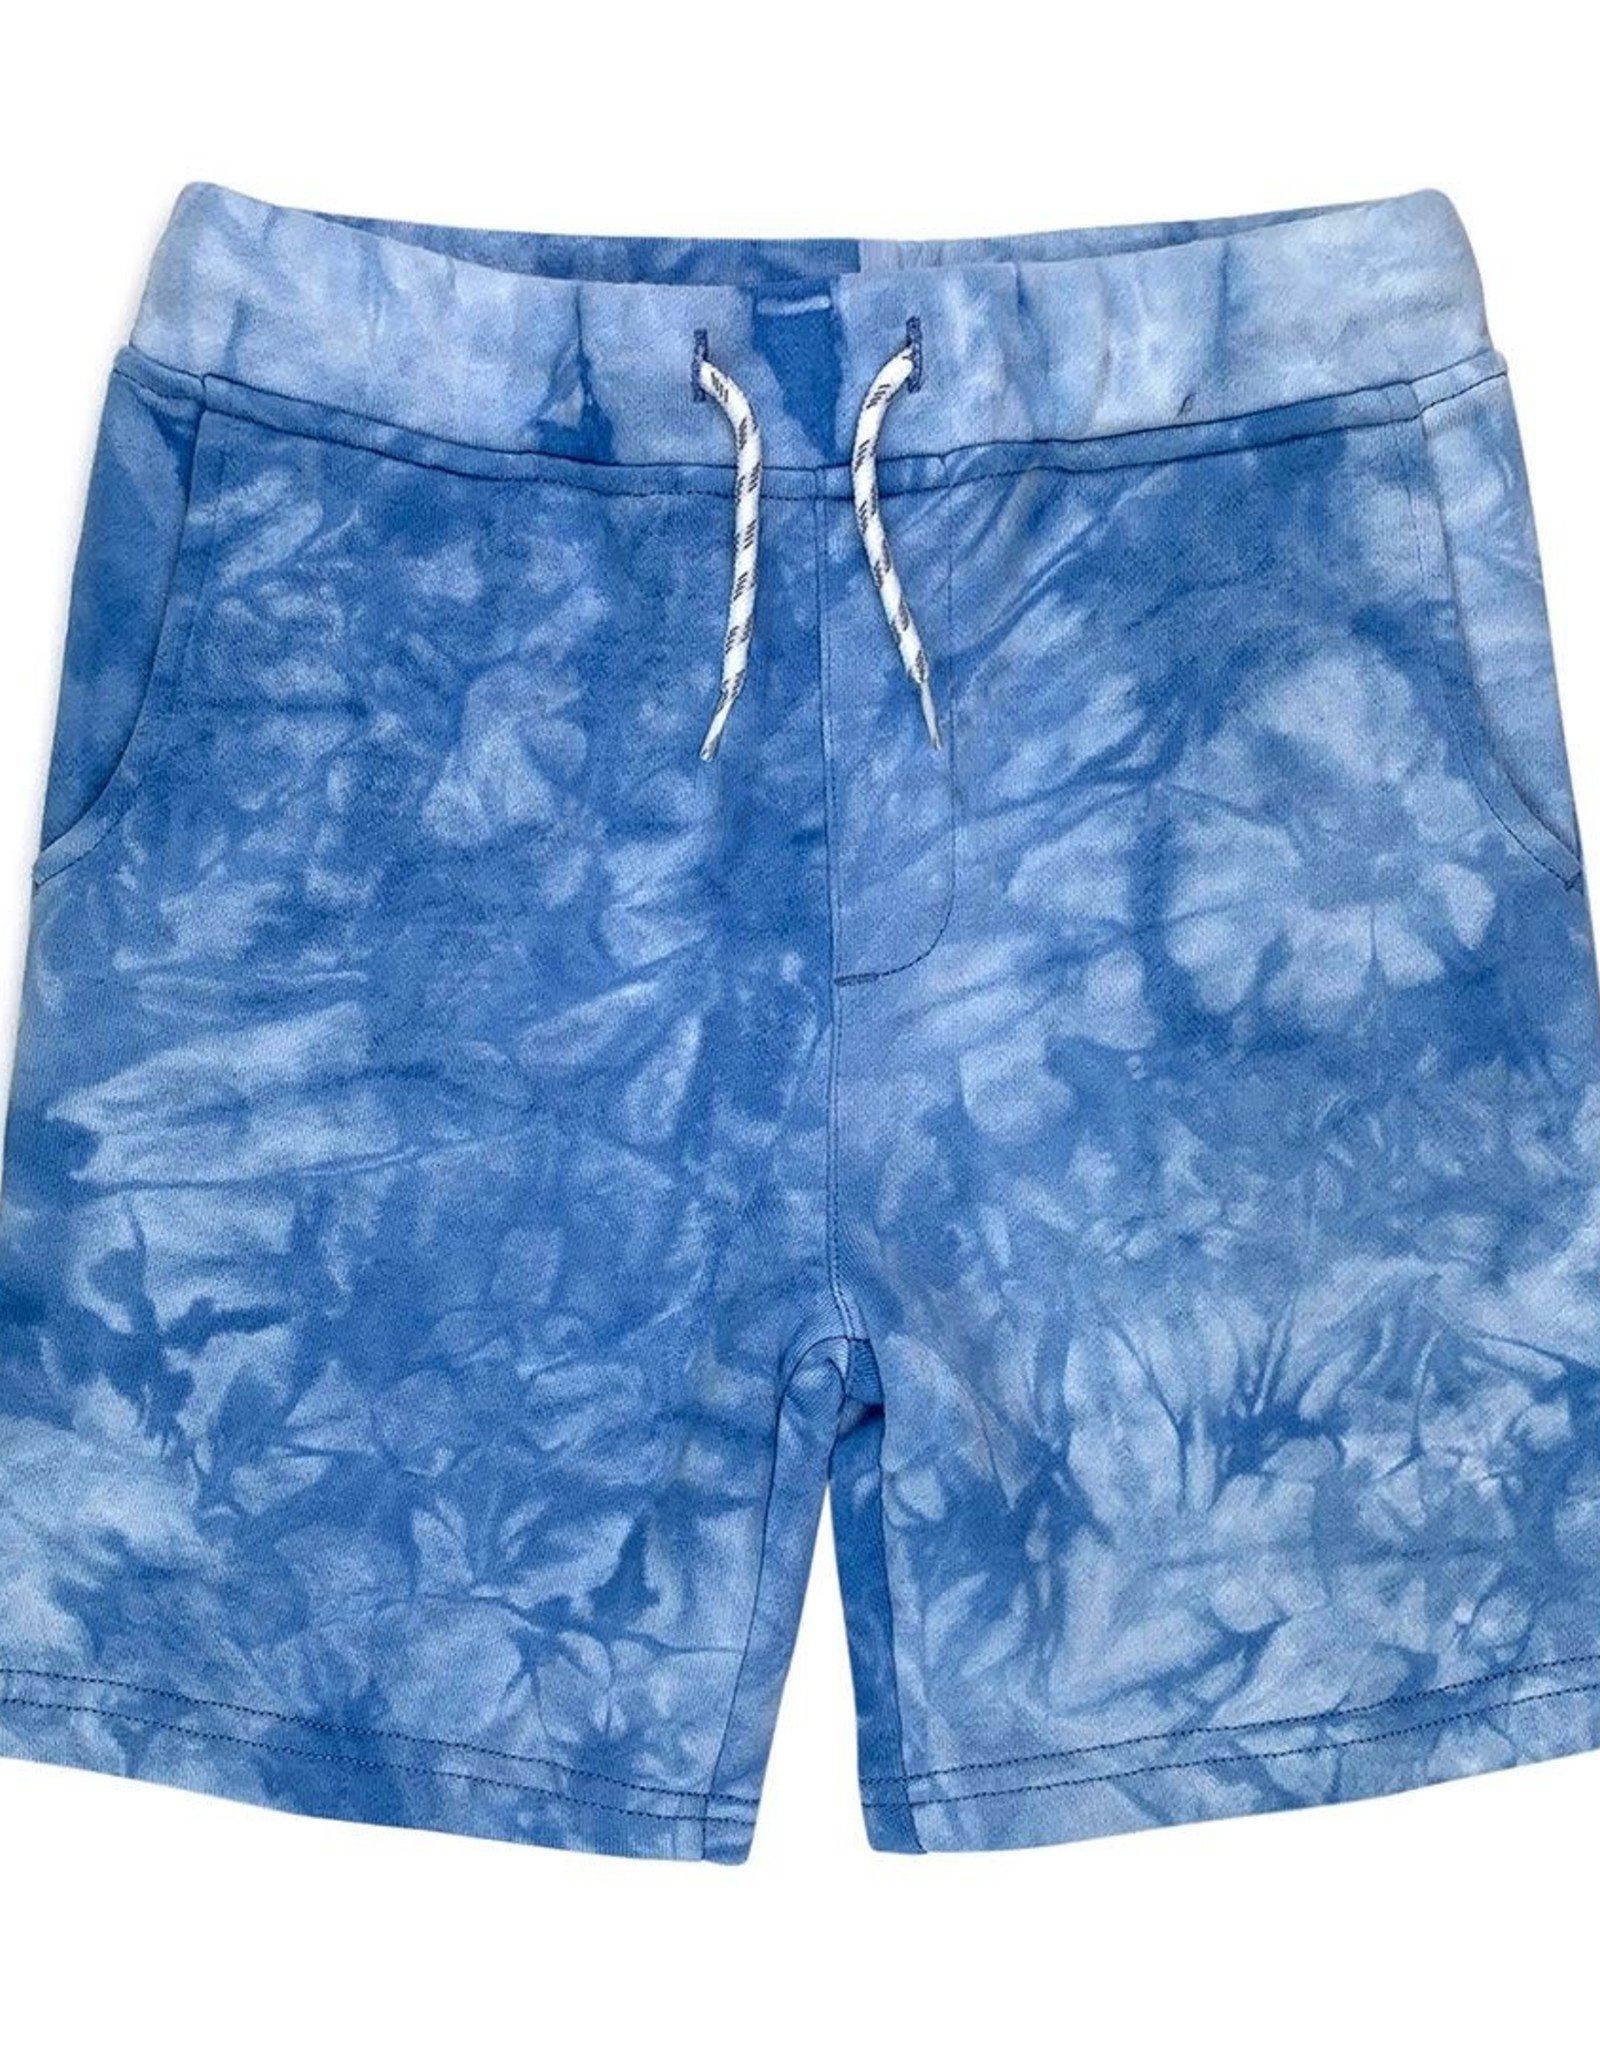 Appaman Preston Shorts, Blue Tie Dye